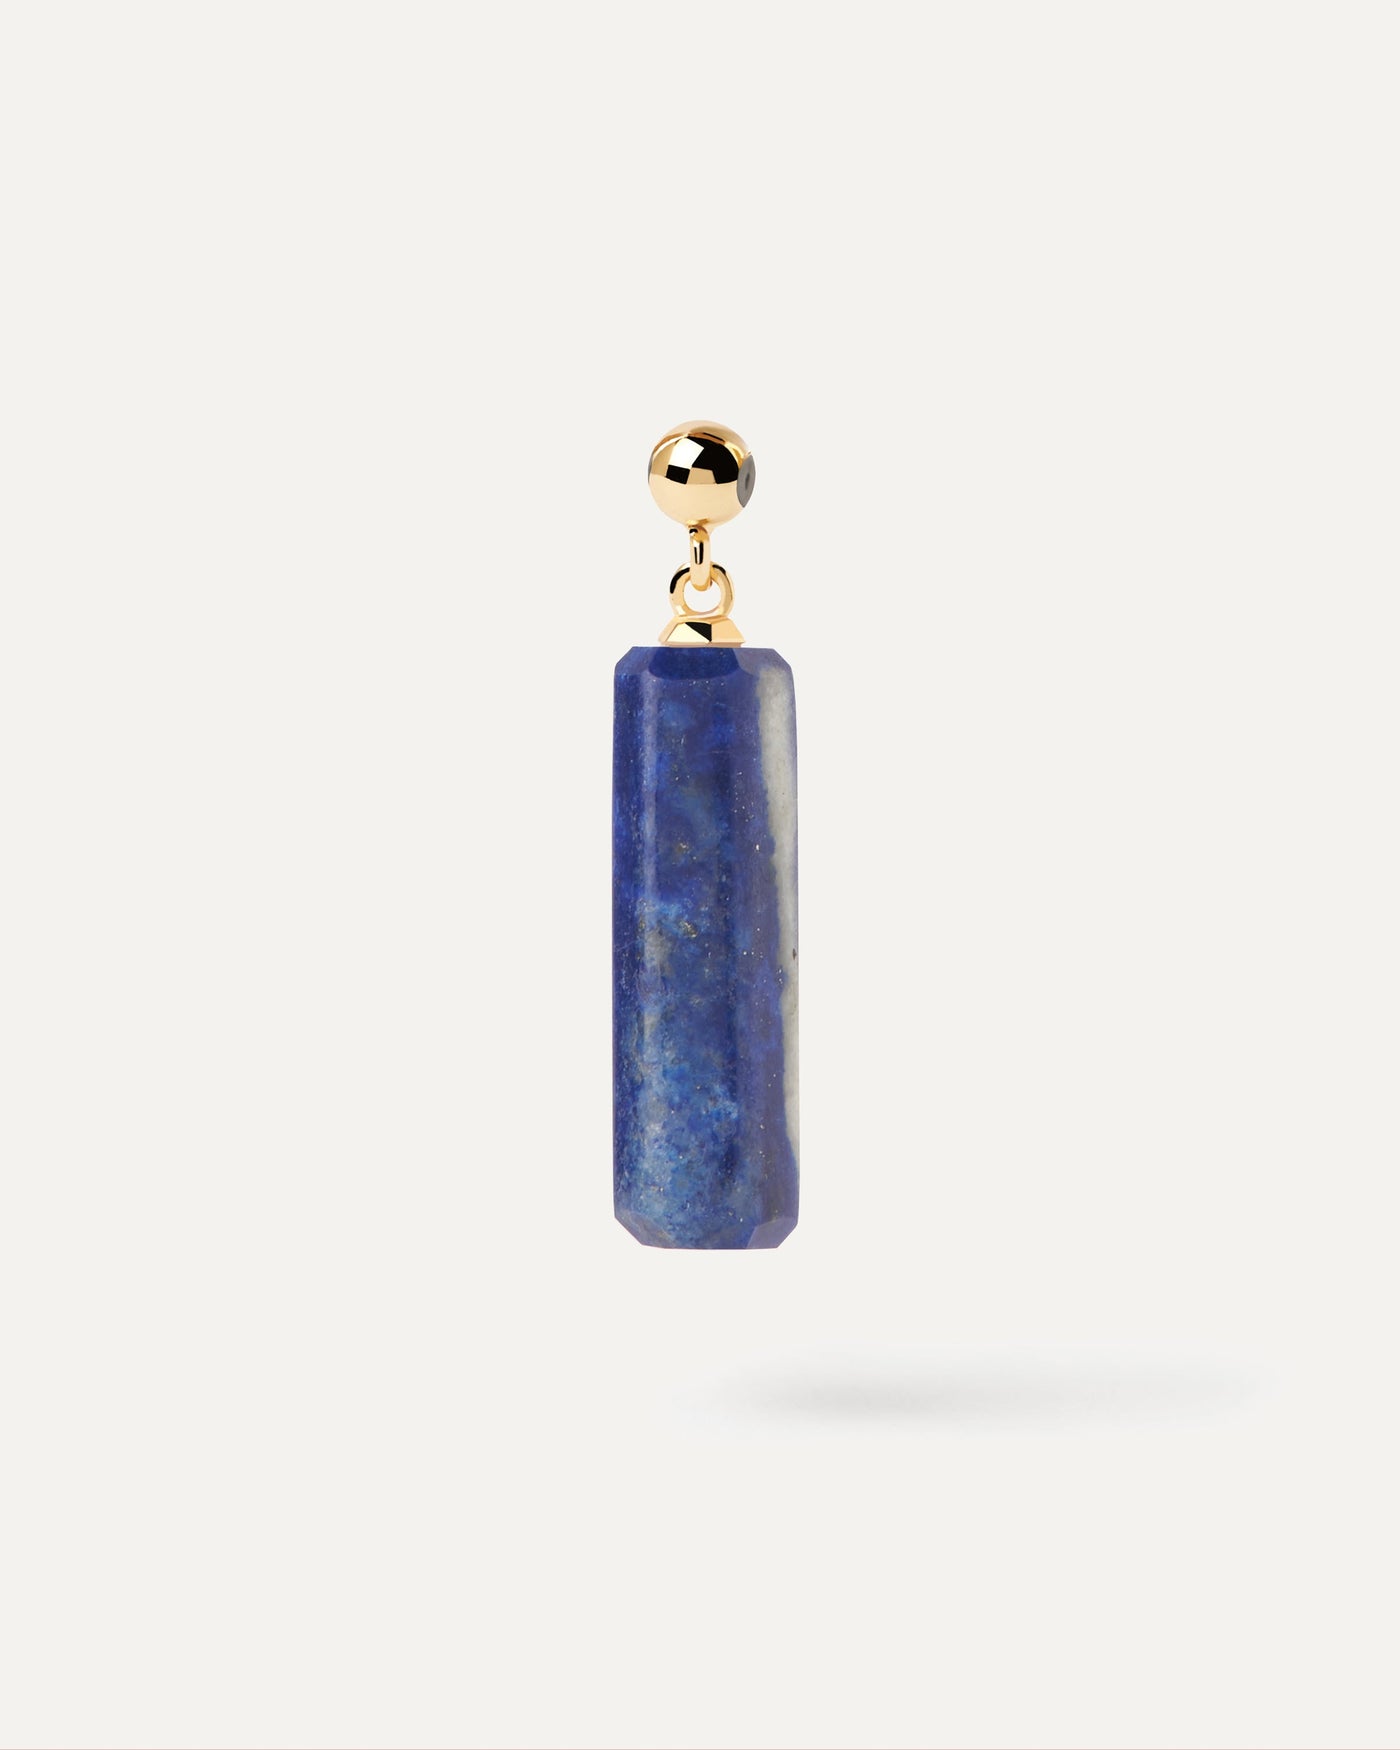 Charm Lapislázuli. Charm de piedra azul oscuro con forma alargada para colgar en collar o pulsera. Consigue las últimas novedades de PDPAOLA. Haz tu pedido de forma segura y obtén este Best Seller.